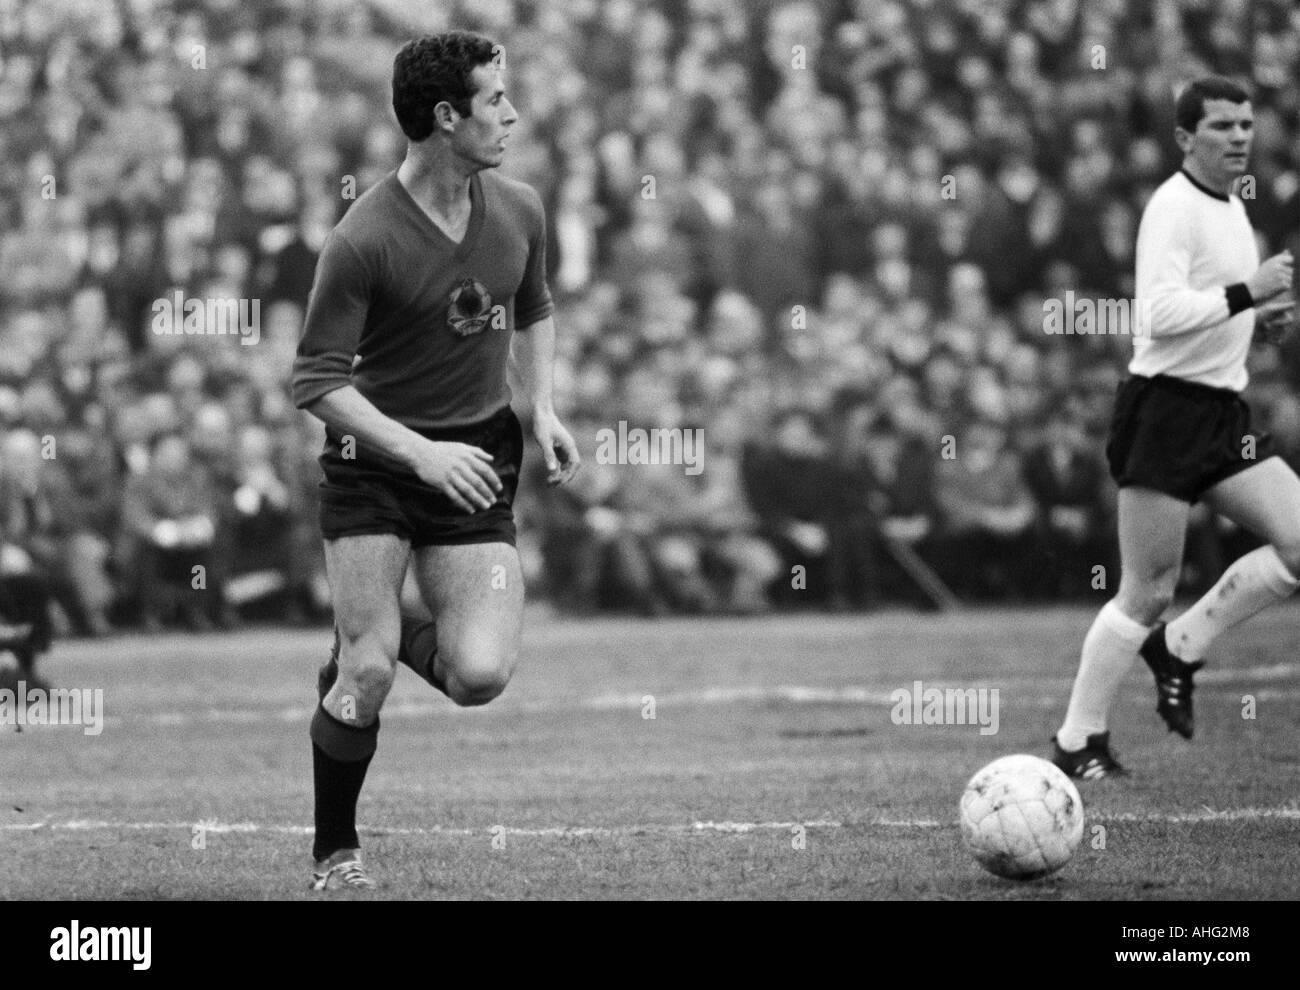 Football, championnat d'Europe 1968, tour de qualification, groupe 4, stade Rote Erde à Dortmund, en 1967, l'Allemagne contre l'Albanie 6:0, scène du match, Ulsass Lothar droit (1960-1969) Banque D'Images